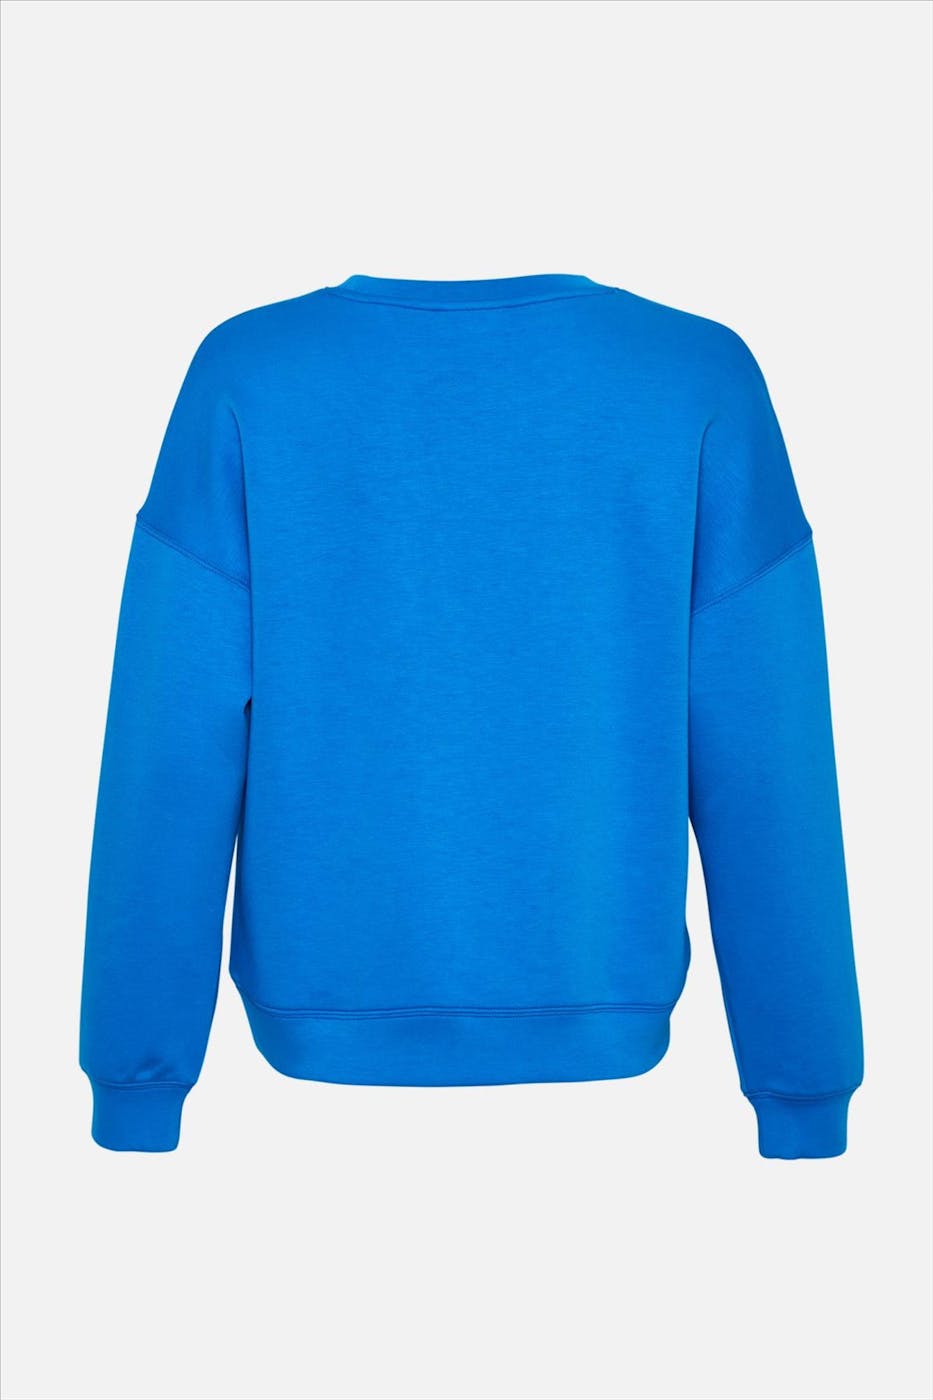 MSCH COPENHAGEN - Blauwe Janelle Lima sweater